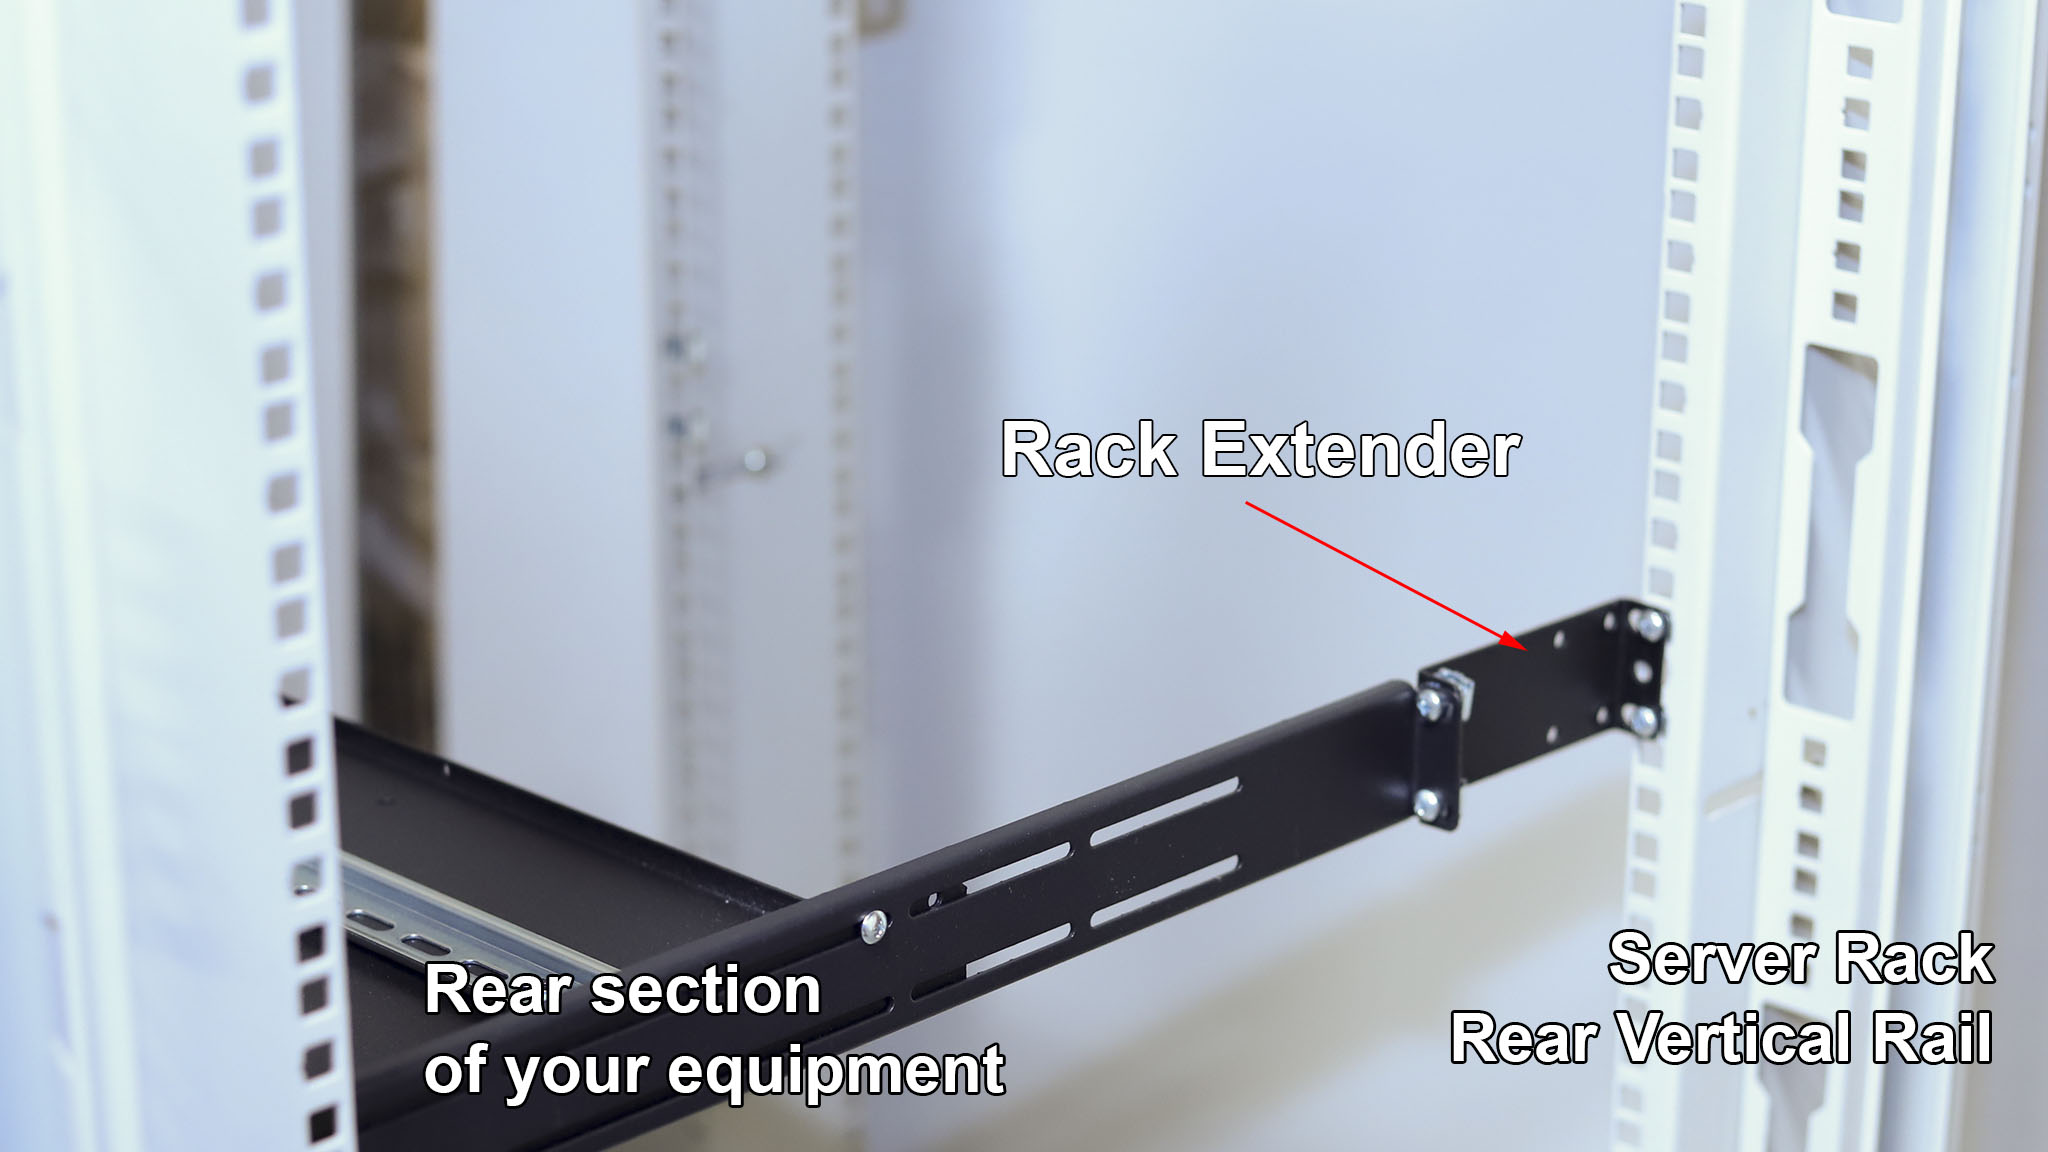 What is IAB104V10-1U rack extender